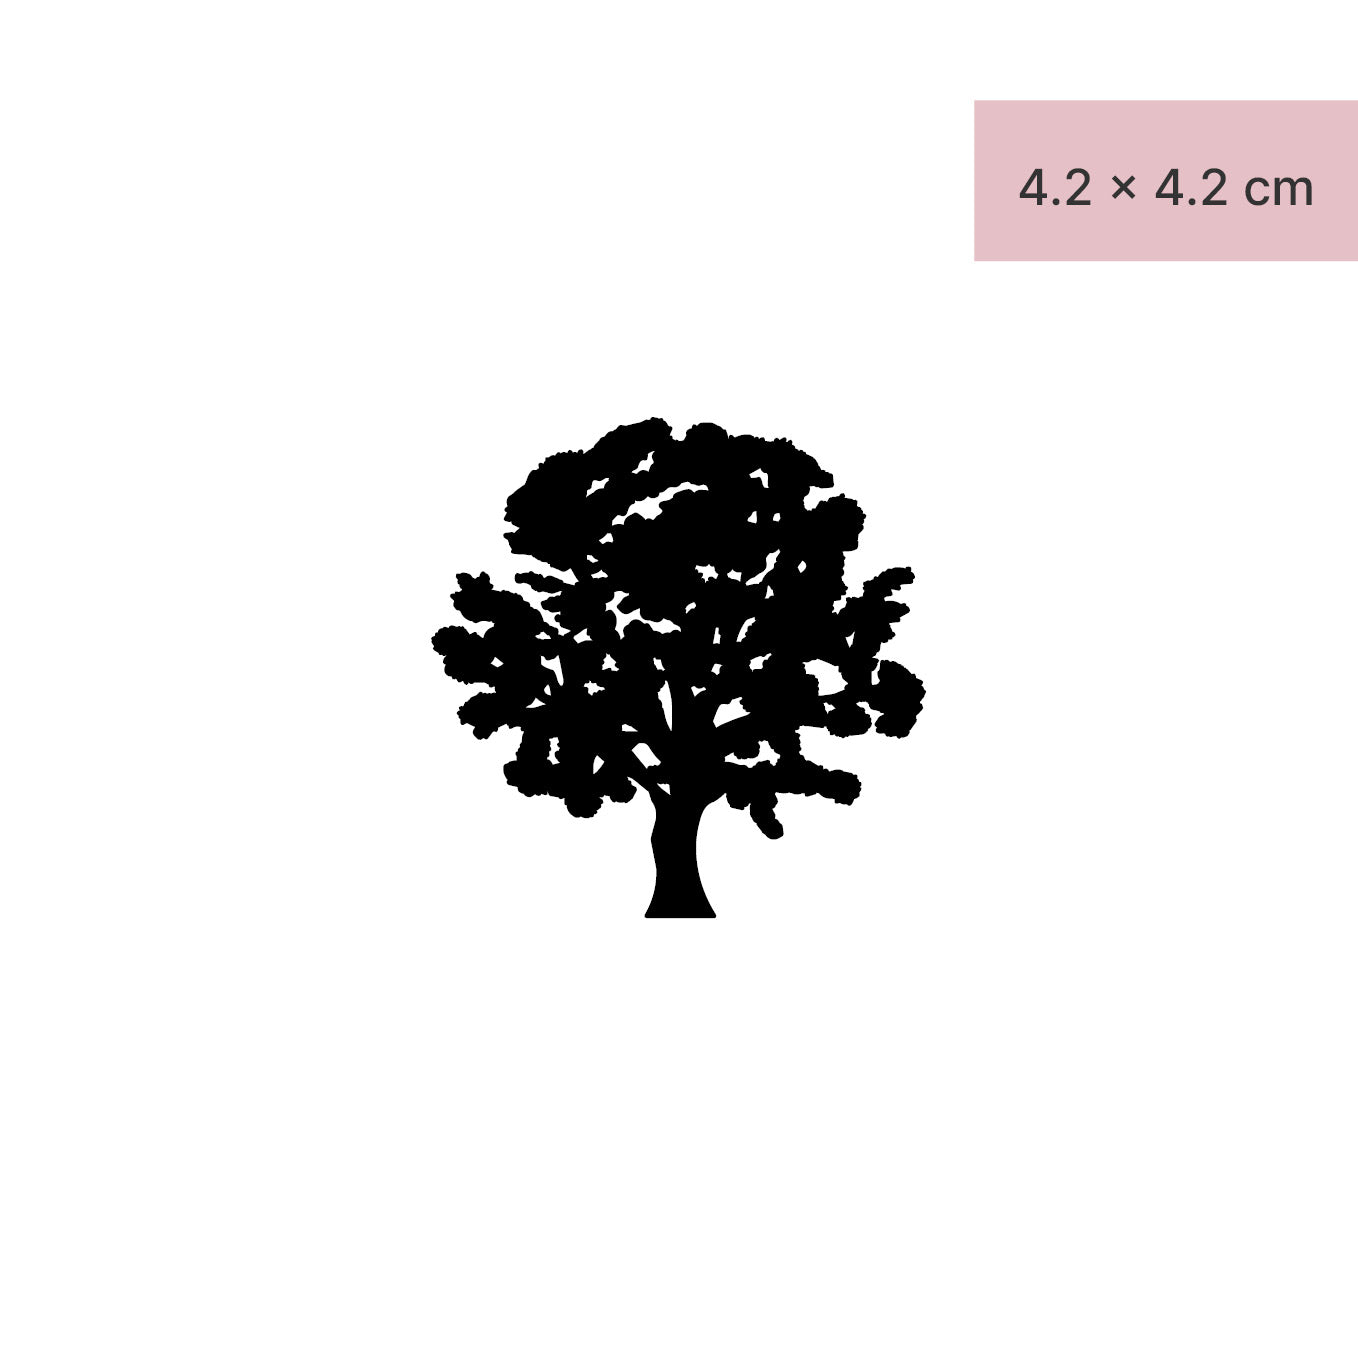 Baum Tattoo von minink, der Marke für temporäre Tattoos.